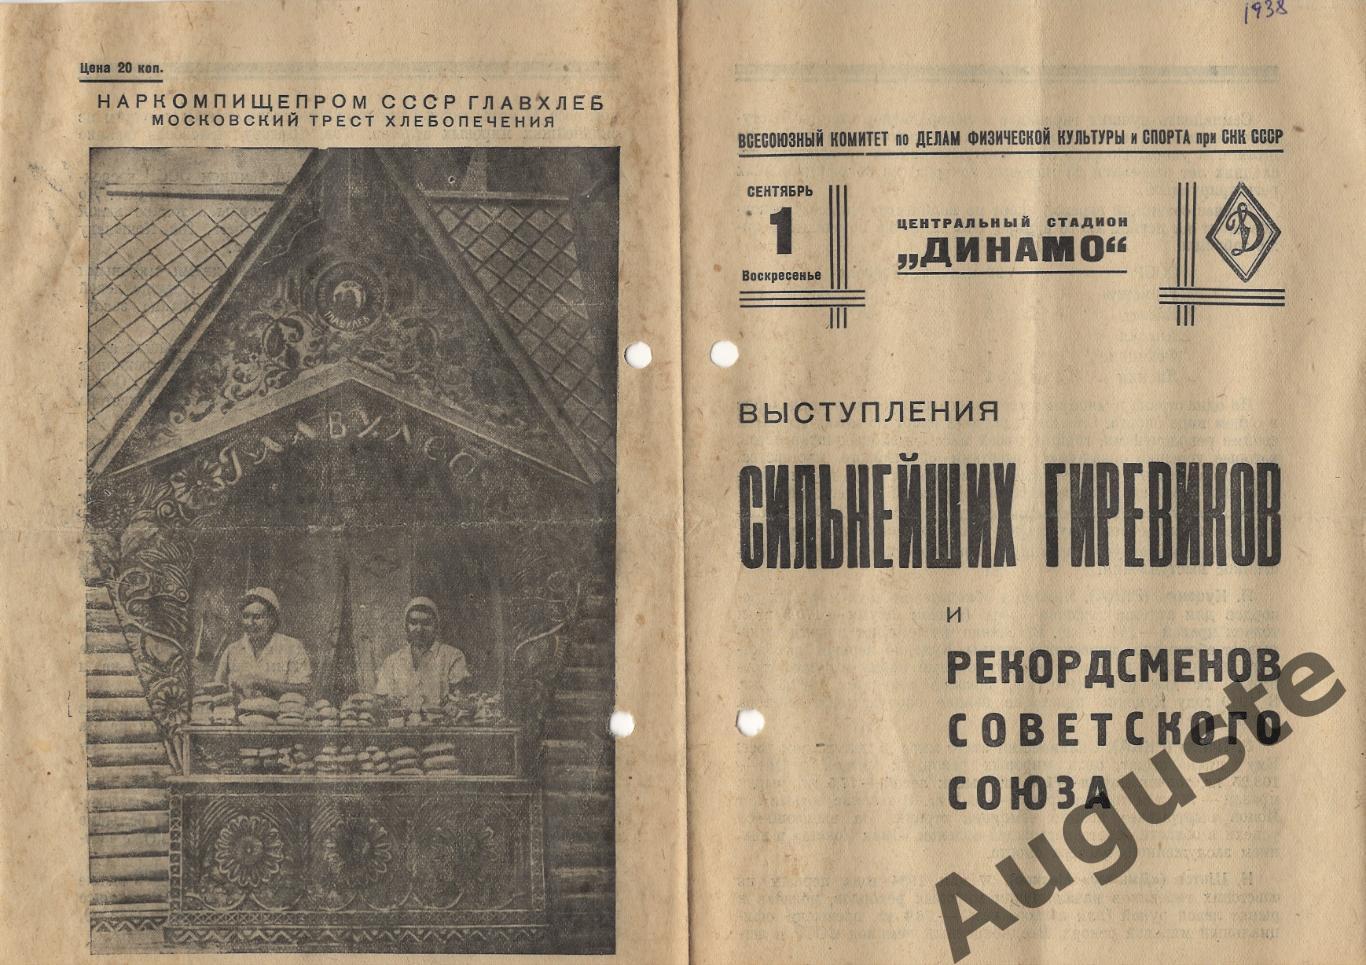 Программа выступления сильнейших гиревиков СССР. 1 сентября 1938 г. Москва.